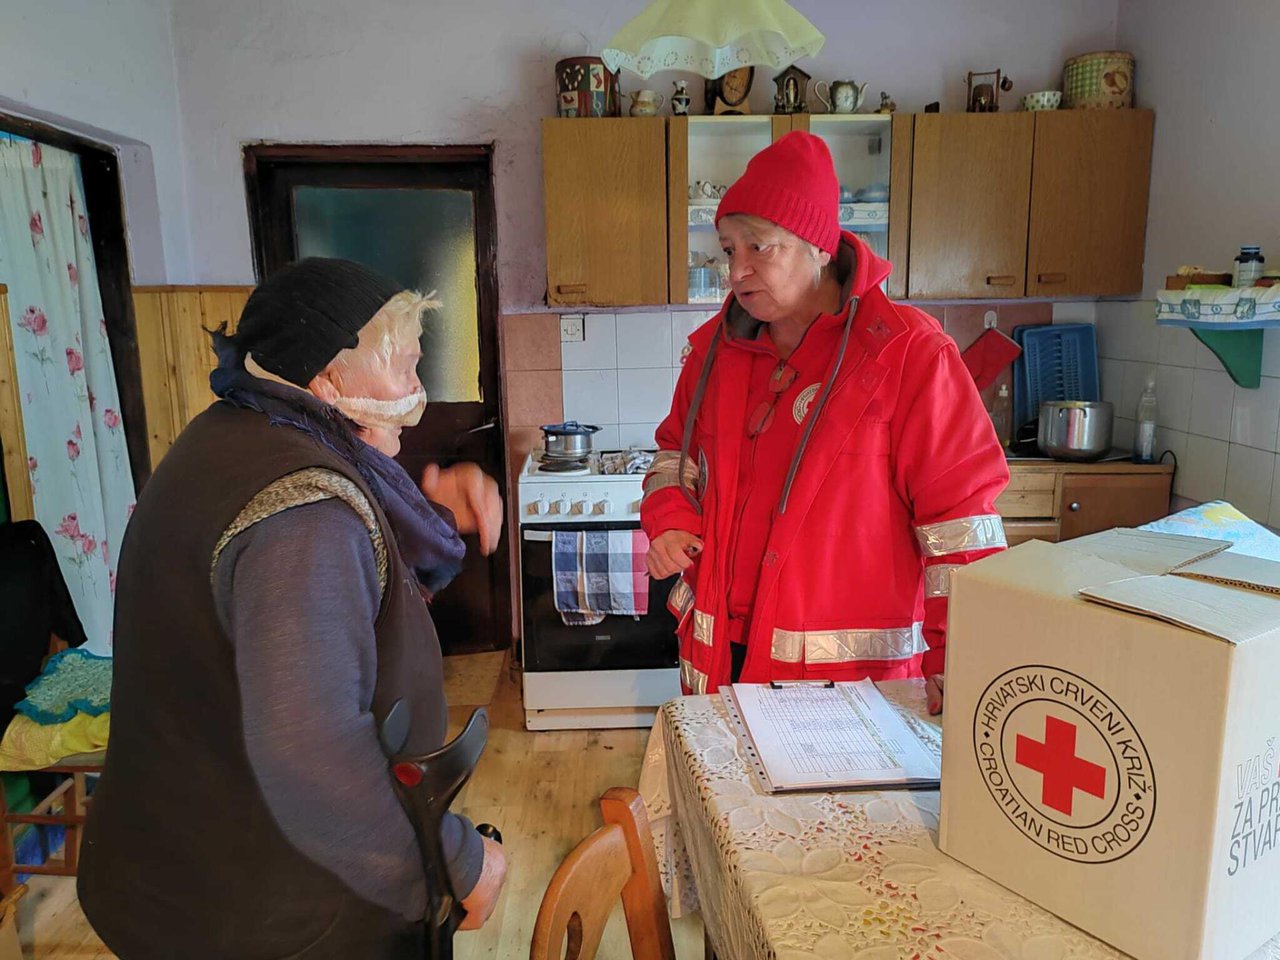 Fotografija: Gradsko društvo Crvenog križa poziva sve građane koji mogu i žele da podrže akciju i na taj način daju svoj doprinos u brizi za brojne ljude koji žive u siromaštvu/Foto: Martina Čapo